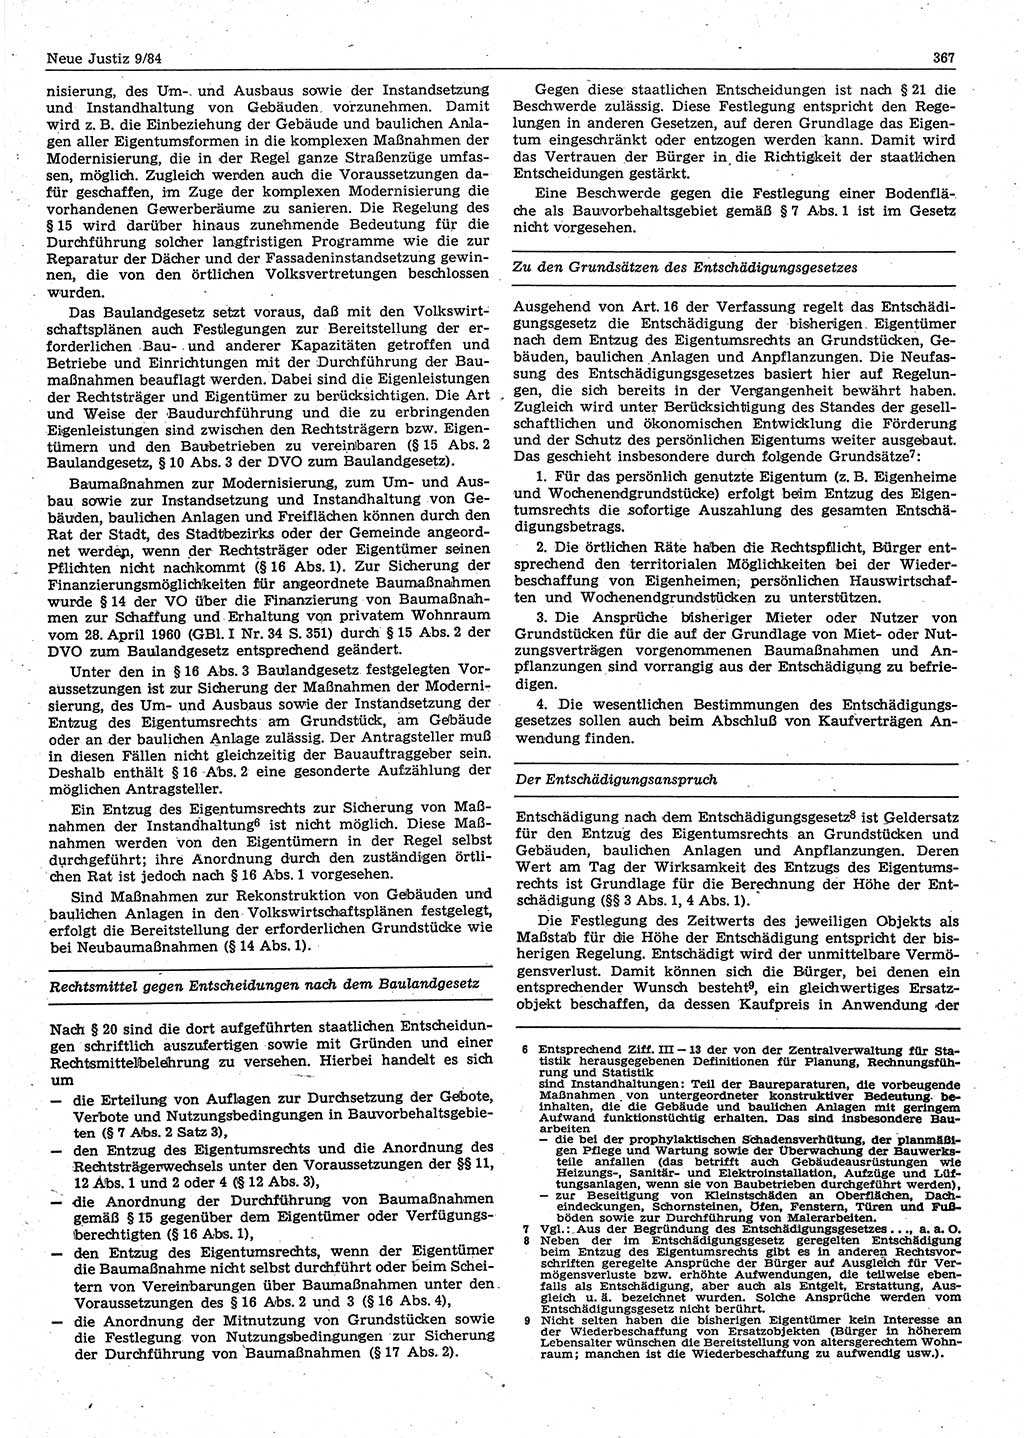 Neue Justiz (NJ), Zeitschrift für sozialistisches Recht und Gesetzlichkeit [Deutsche Demokratische Republik (DDR)], 38. Jahrgang 1984, Seite 367 (NJ DDR 1984, S. 367)